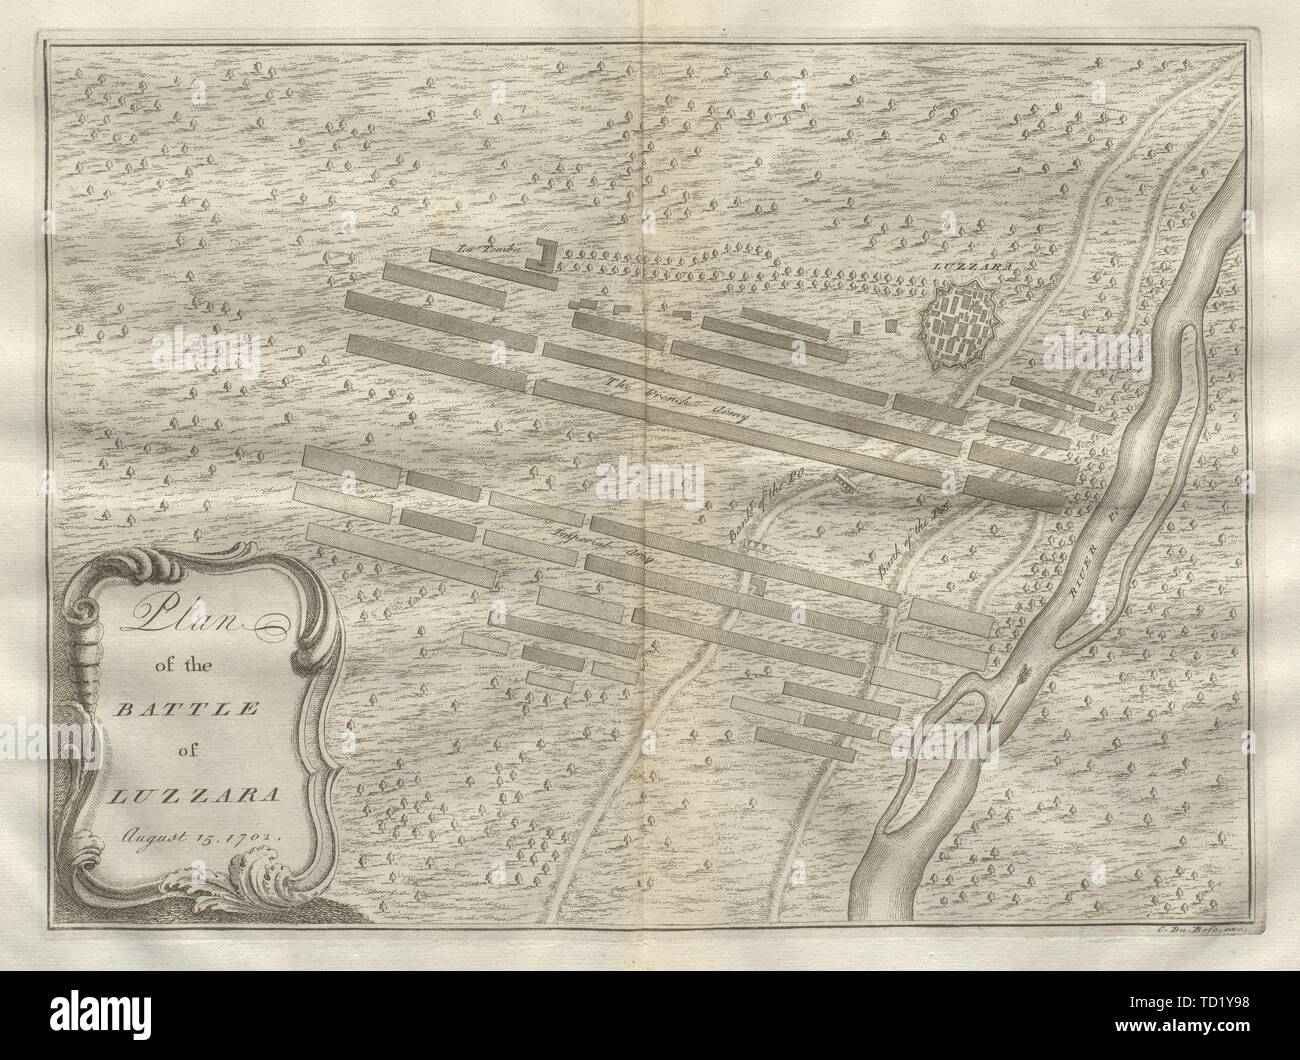 Piano di Battaglia di Luzzara Agosto 15, 1702. Reggio Emilia. DU BOSC 1736 mappa Foto Stock